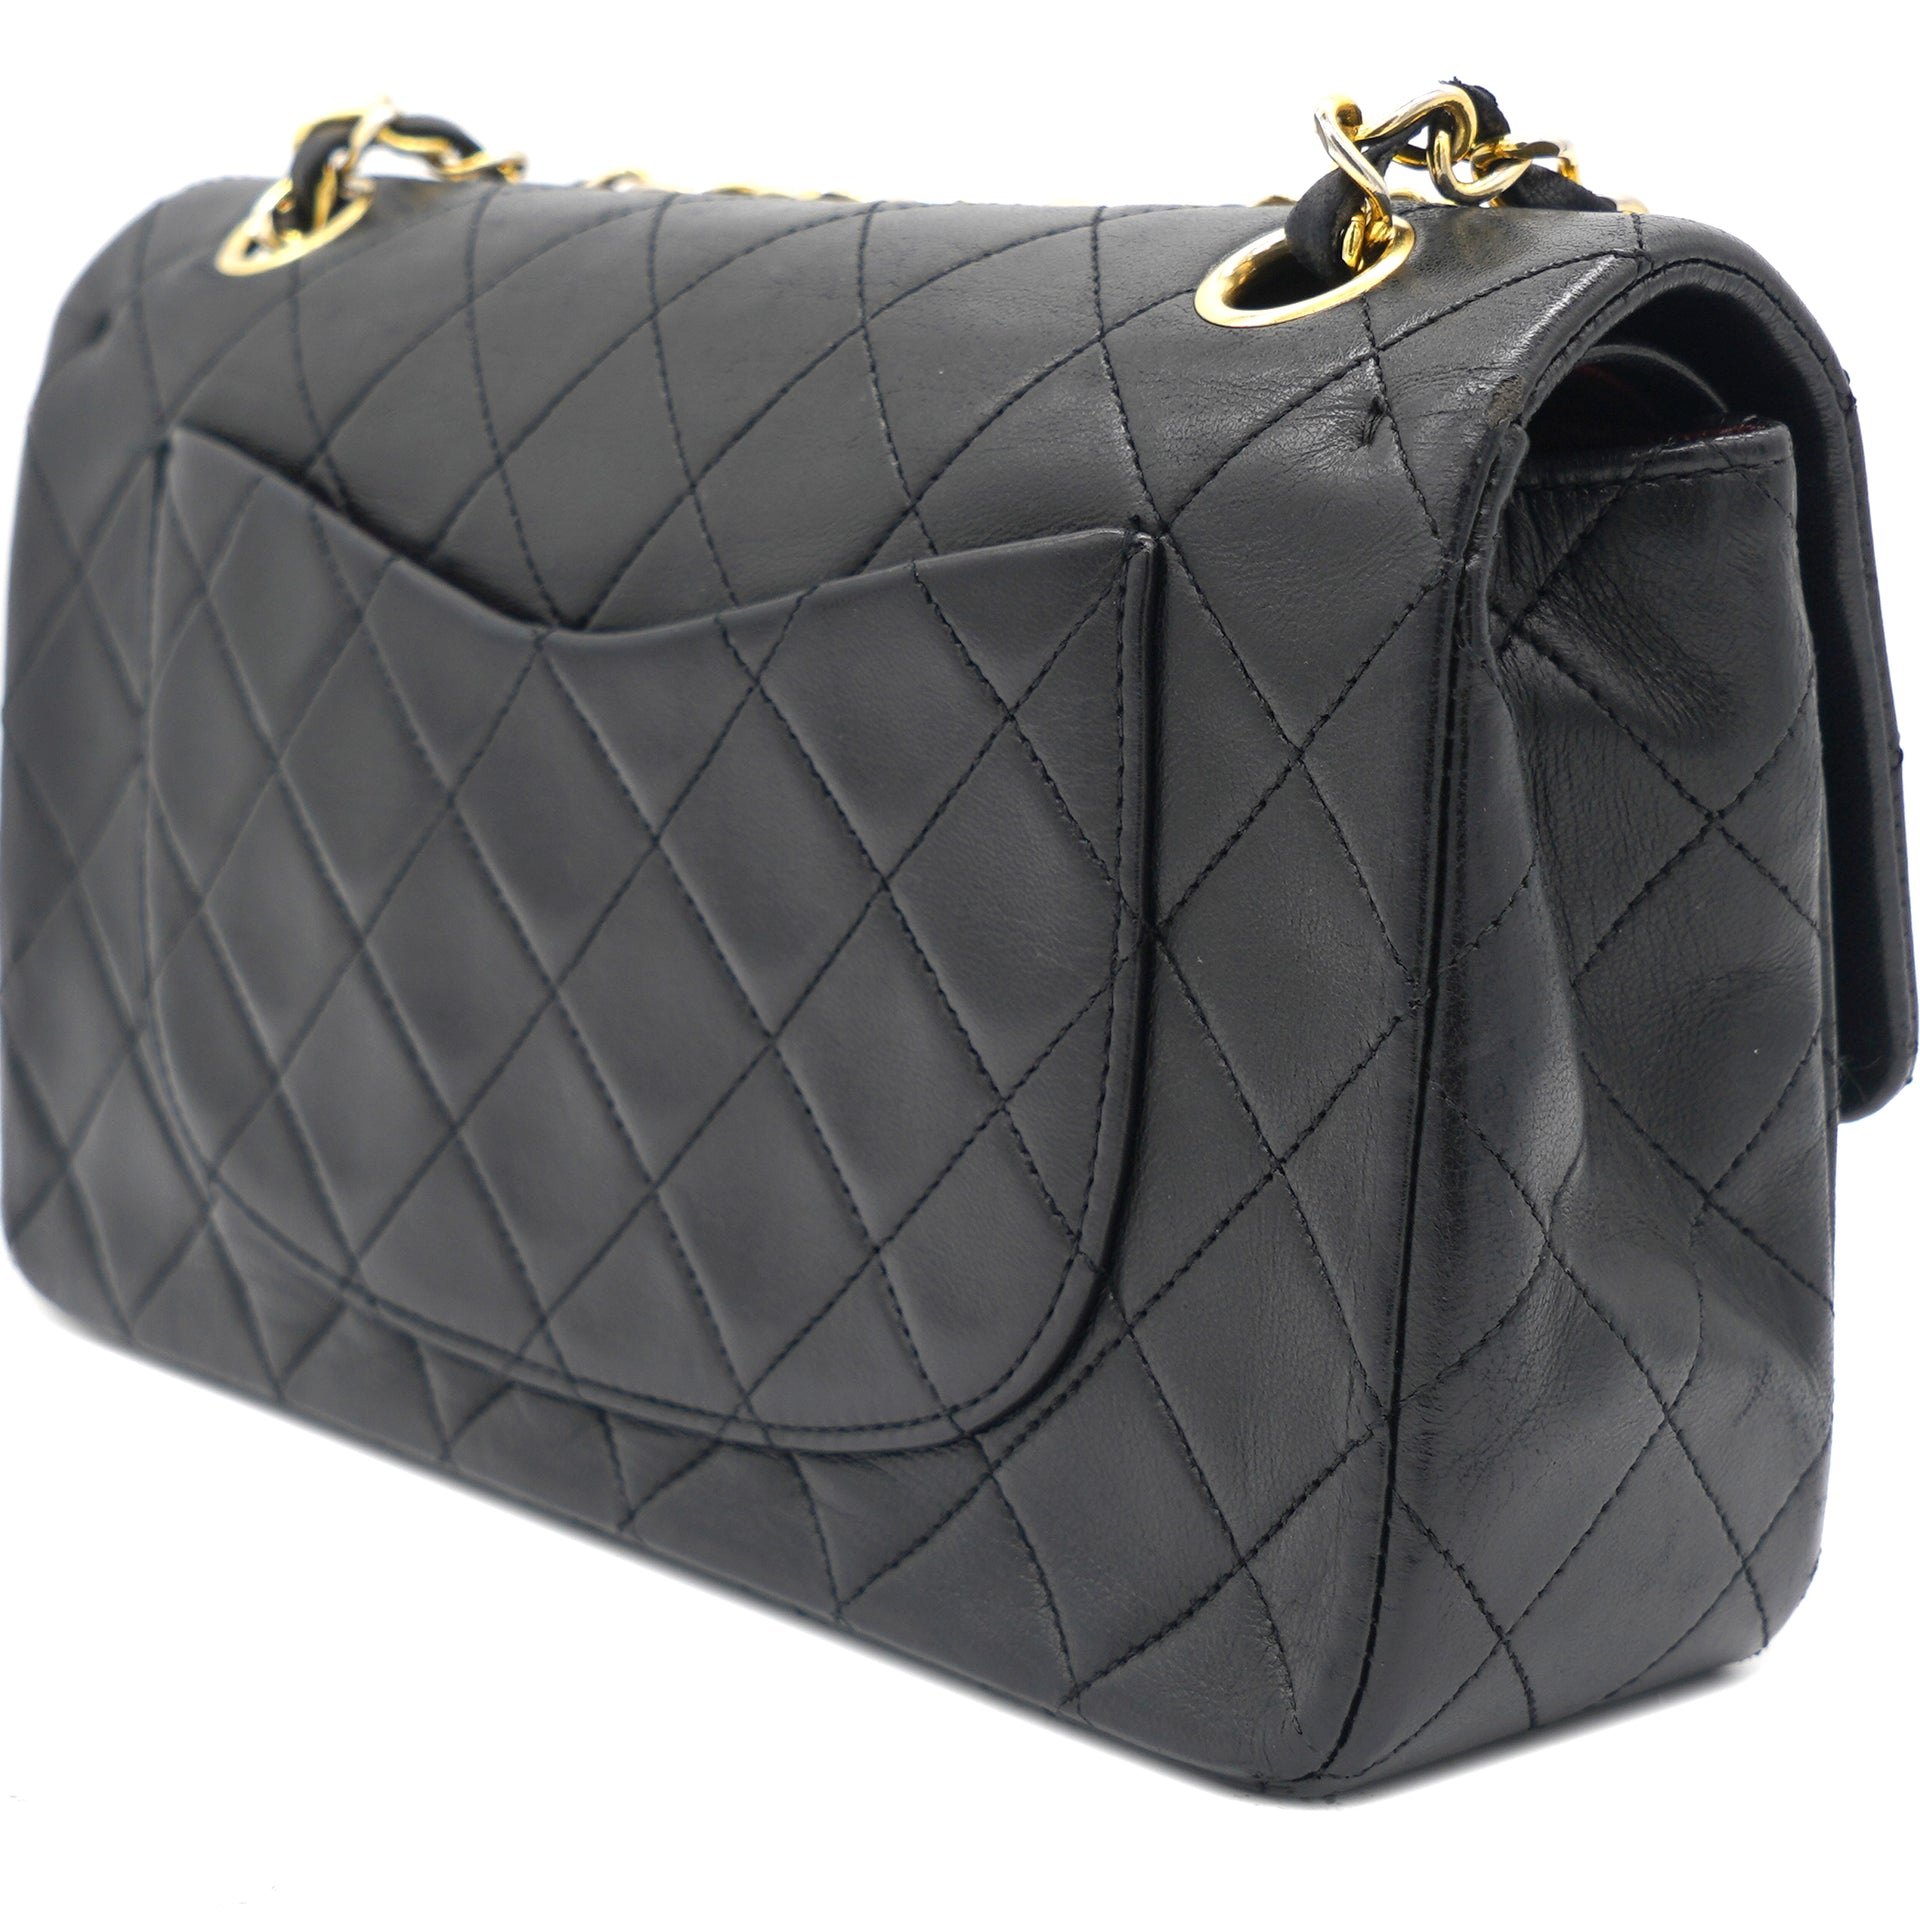 CHANEL Mademoiselle Vintage Flap Sheepskin Leather Shoulder Bag